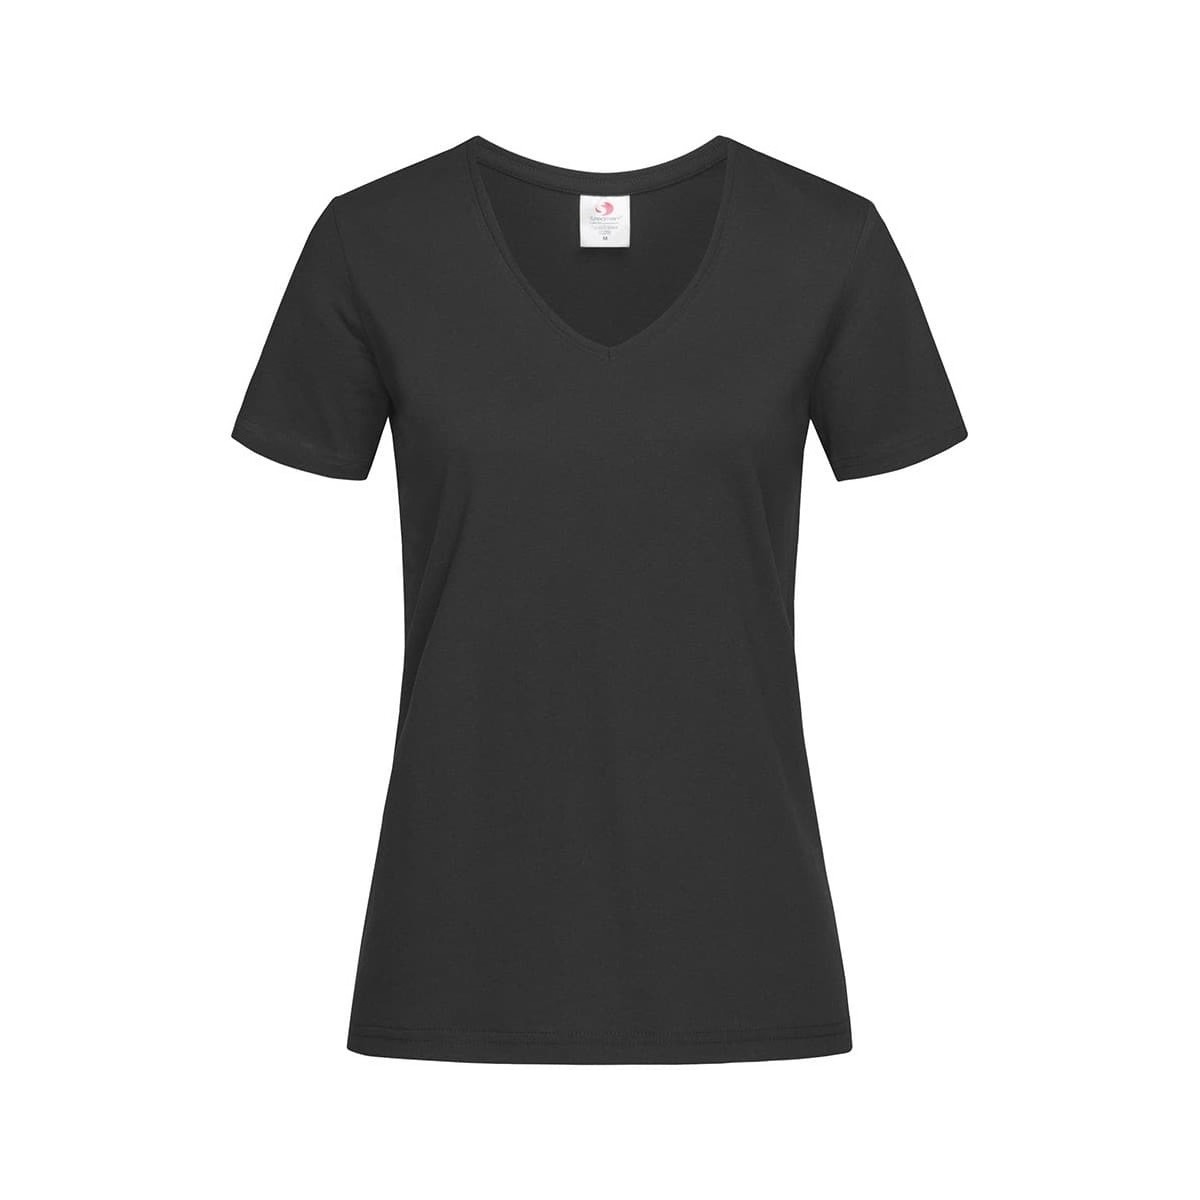 Vêtements Femme T-shirts manches longues Stedman  Noir